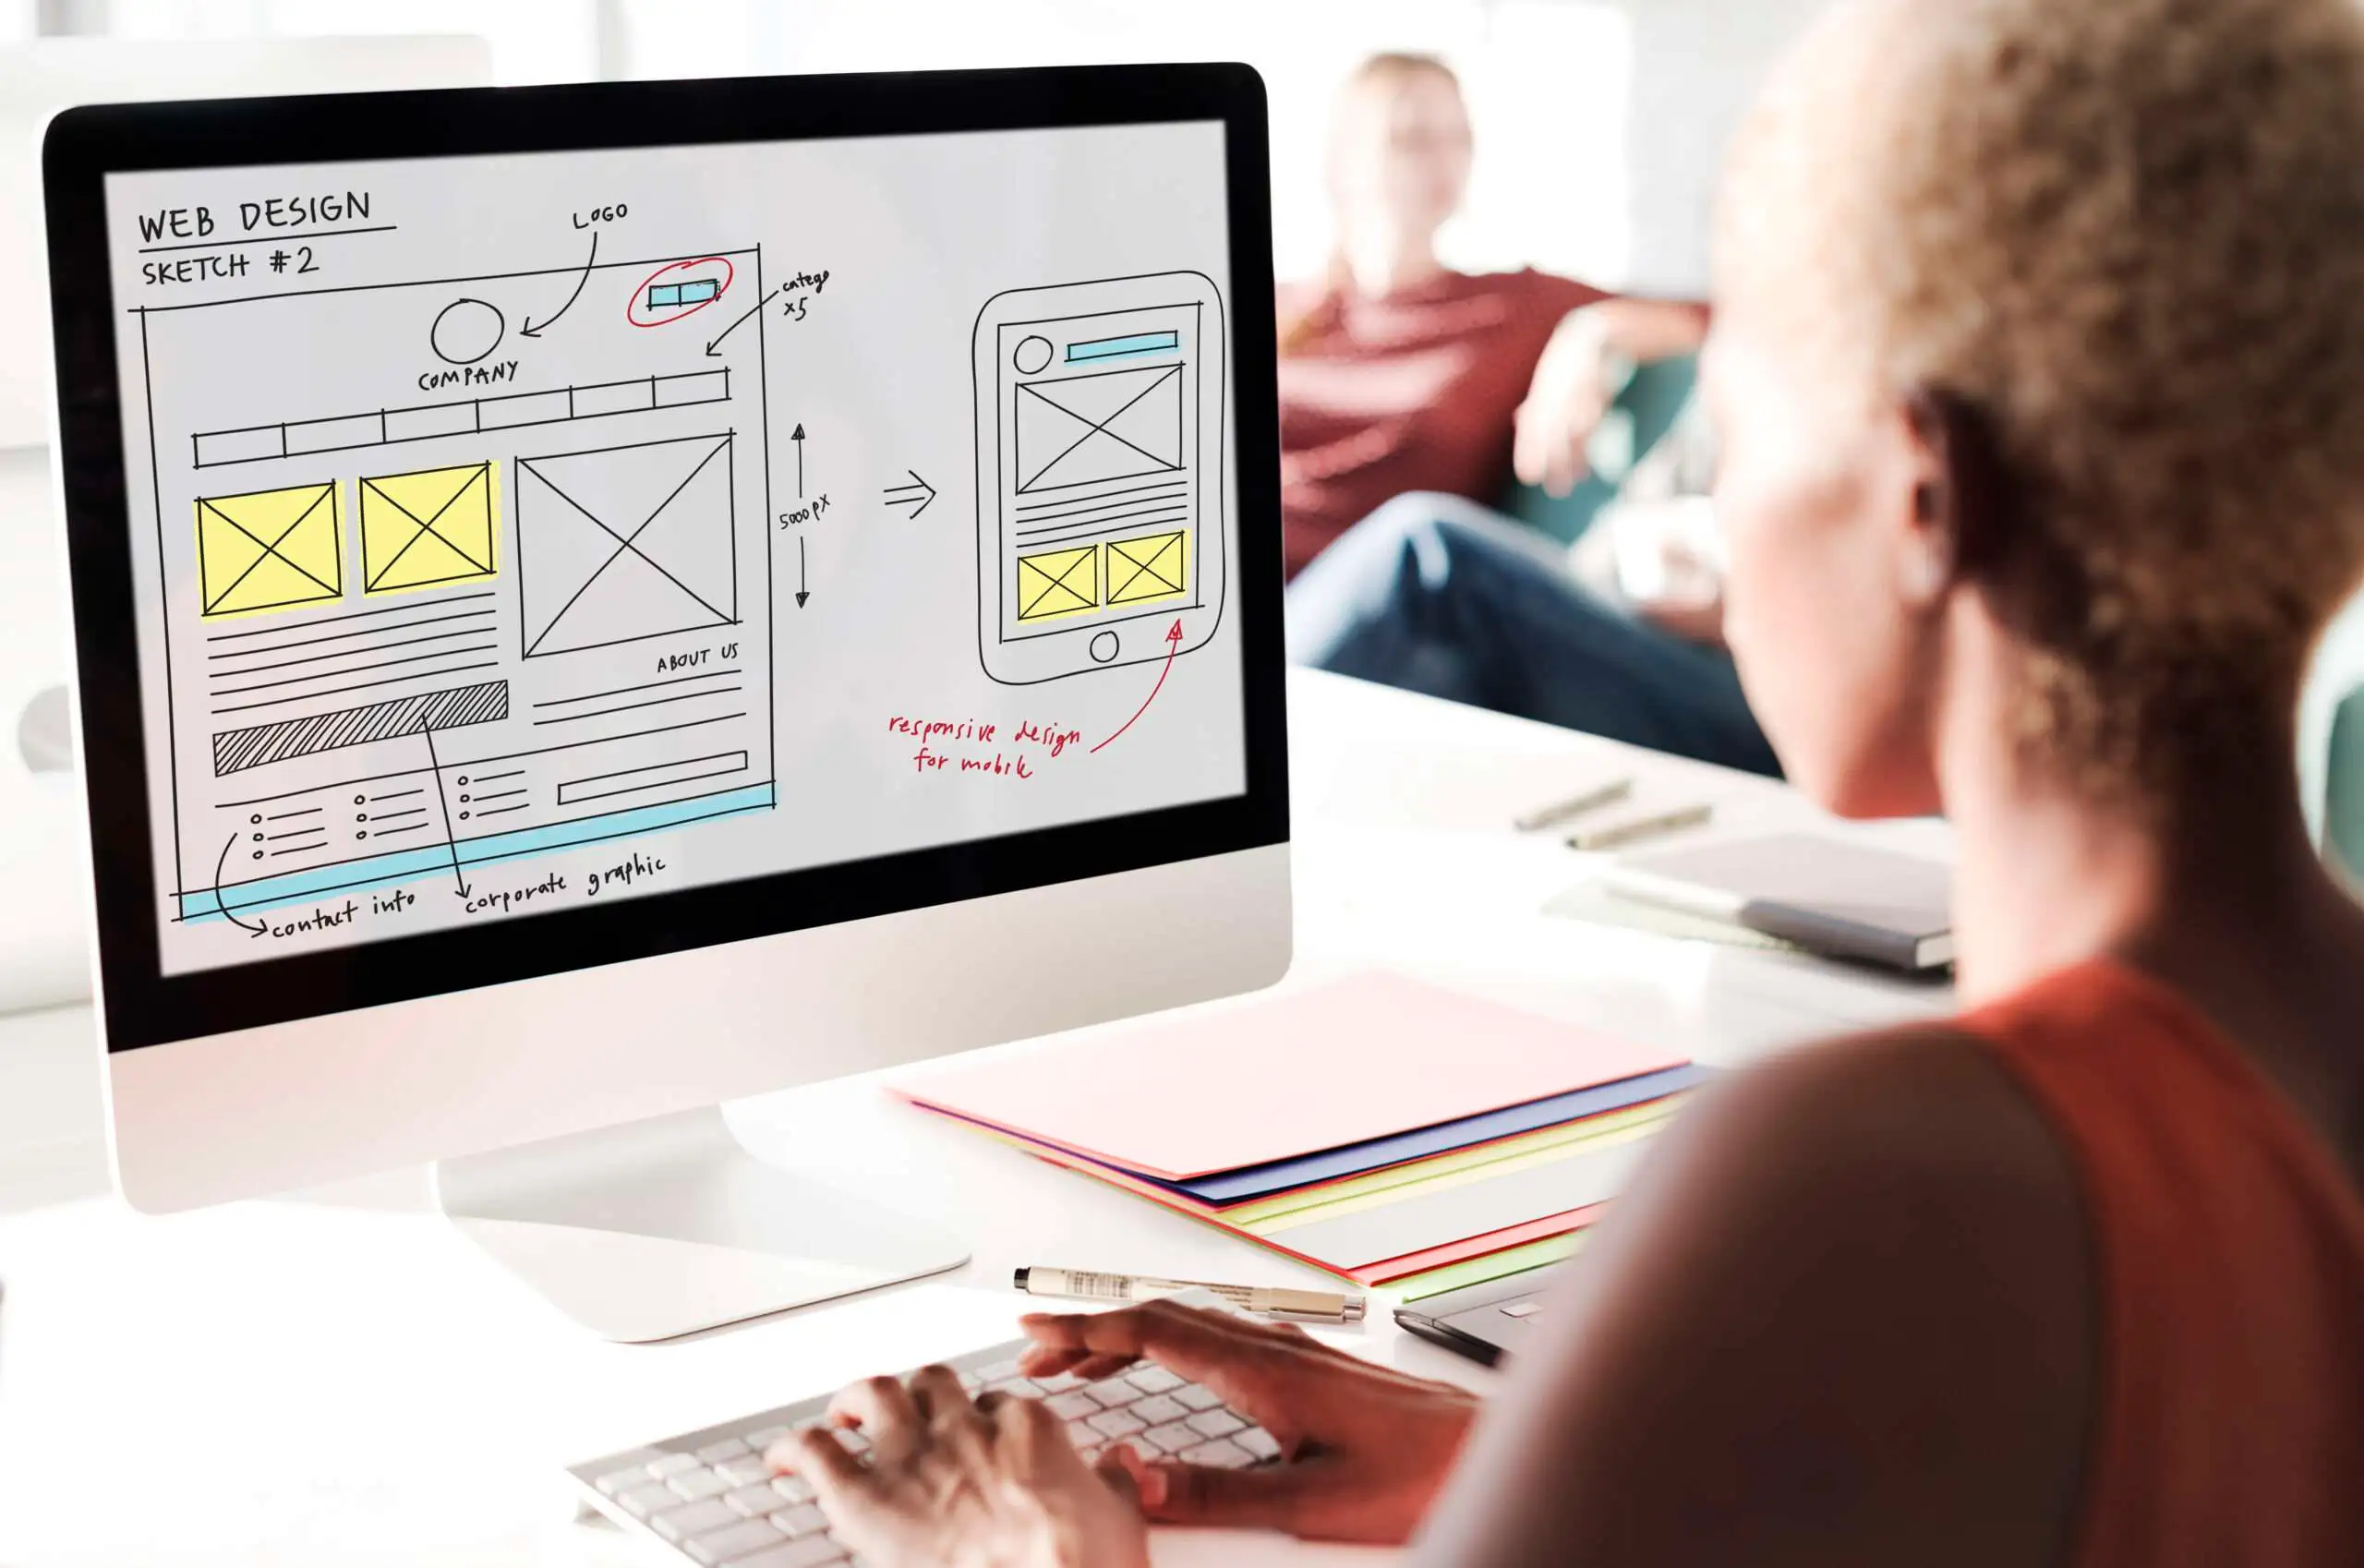 Femme sur un un écran en train de créer un site web. L'image sert à illustrer les explications sur la formation création de site web.